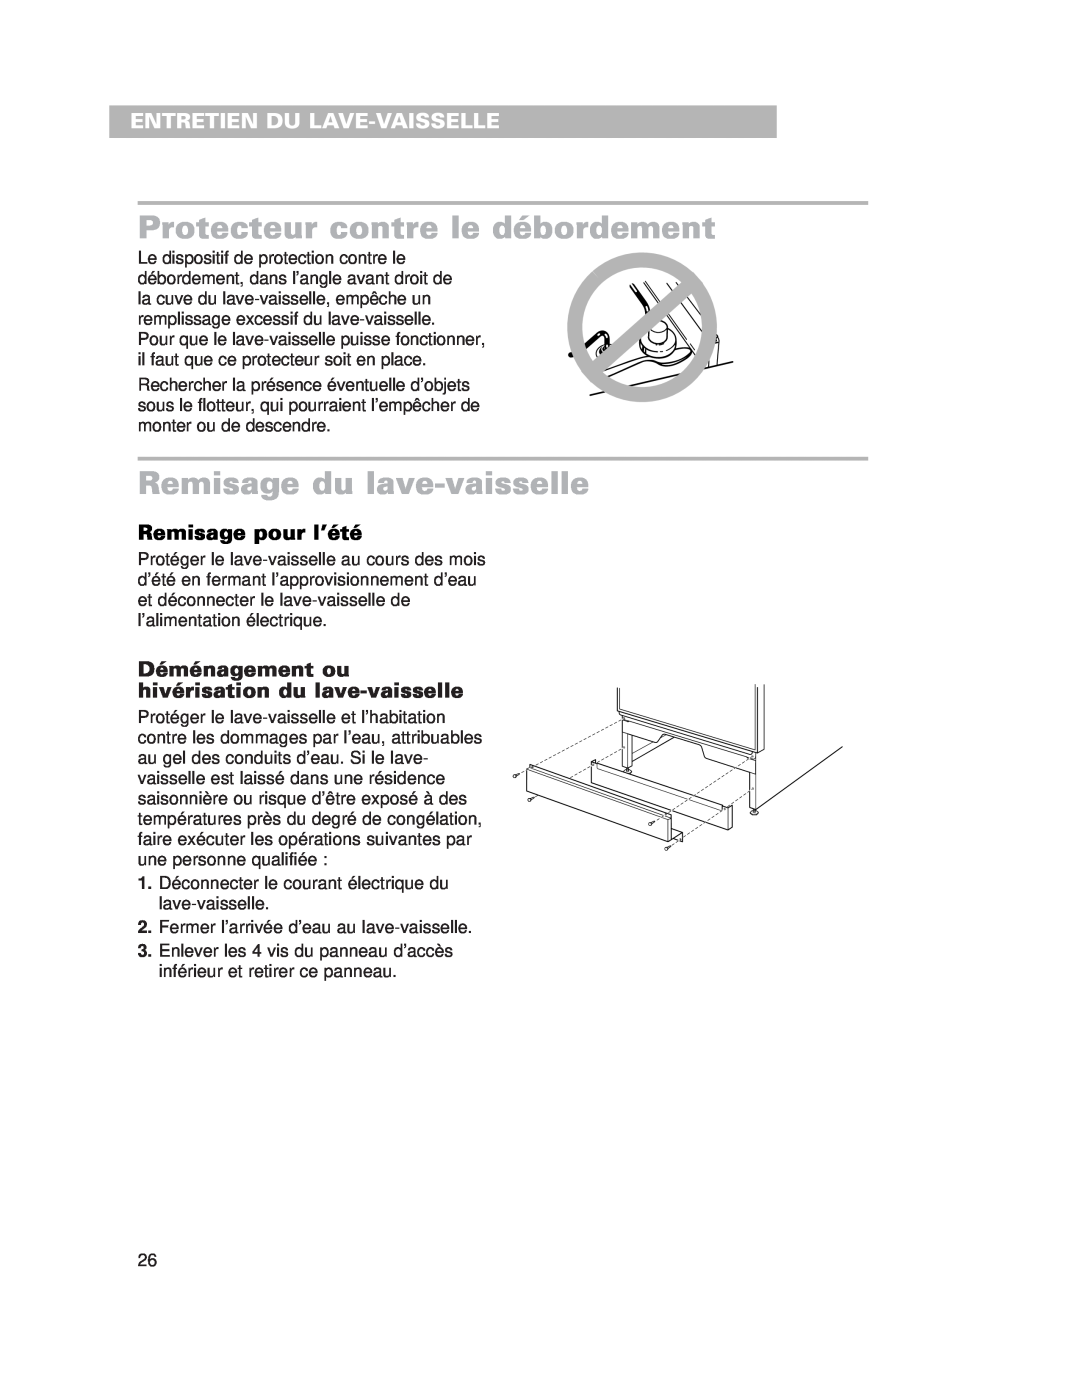 Whirlpool 980 warranty Protecteur contre le débordement, Remisage du lave-vaisselle, Entretien Du Lave-Vaisselle 